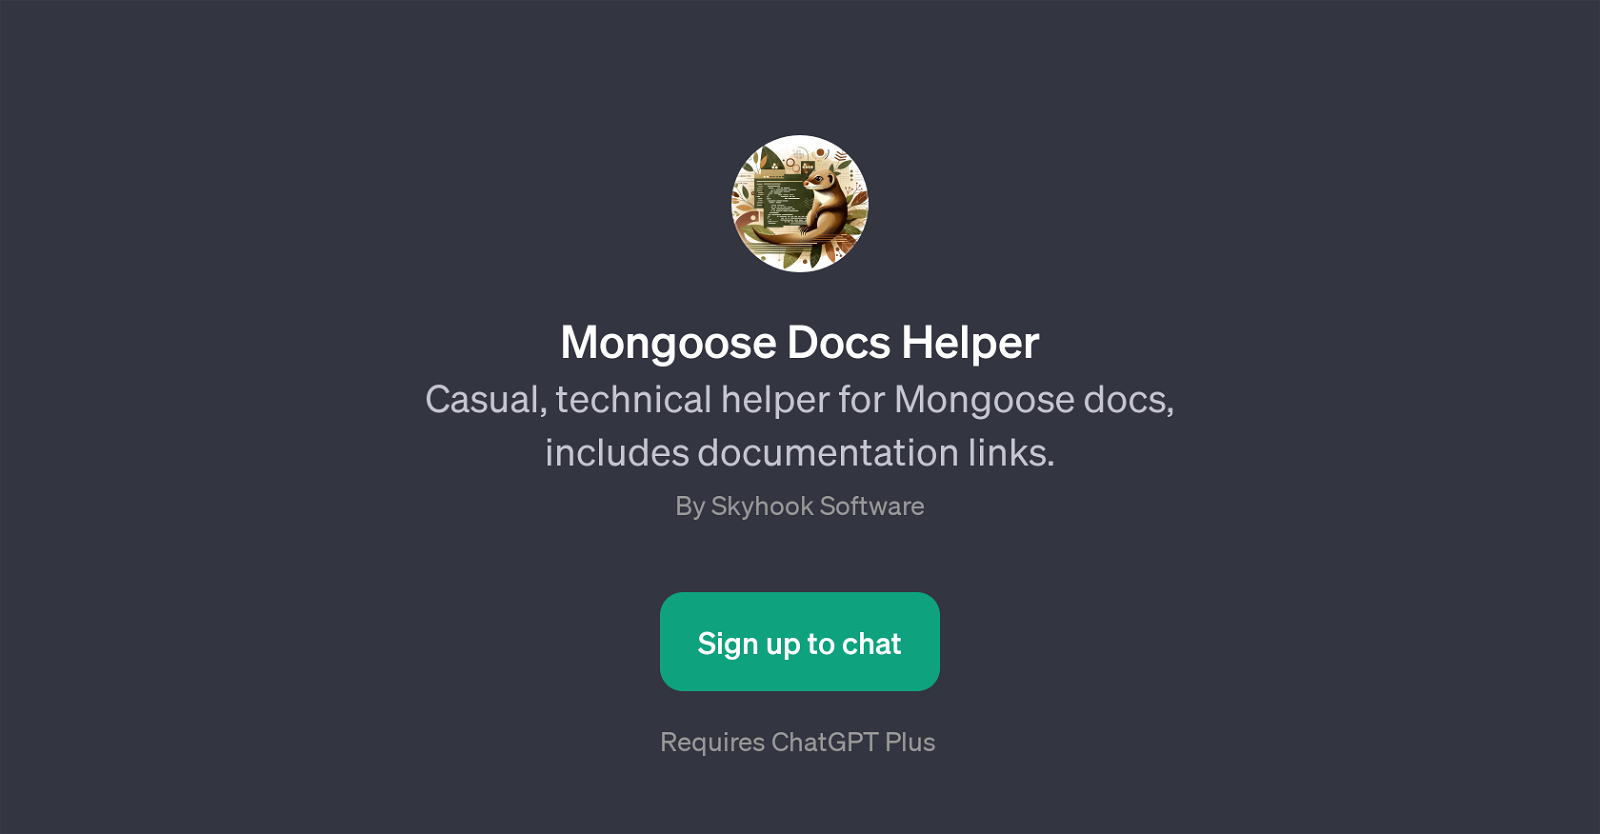 Mongoose Docs Helper website